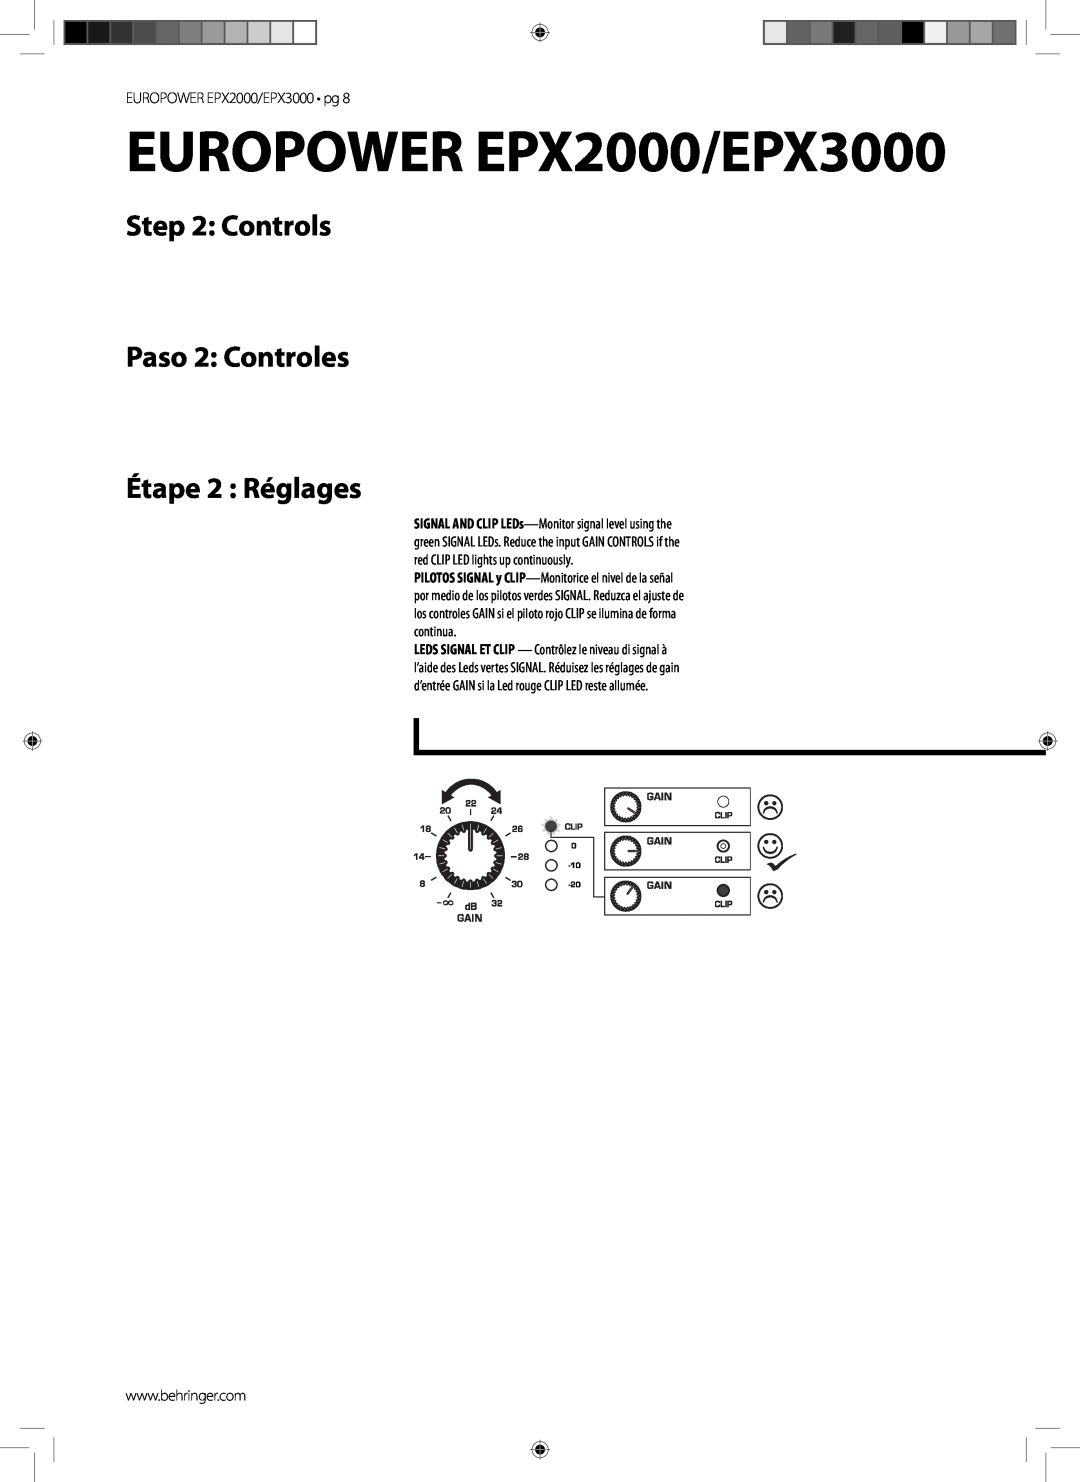 Behringer manual Controls Paso 2 Controles, Étape 2 Réglages, EUROPOWER EPX2000/EPX3000 